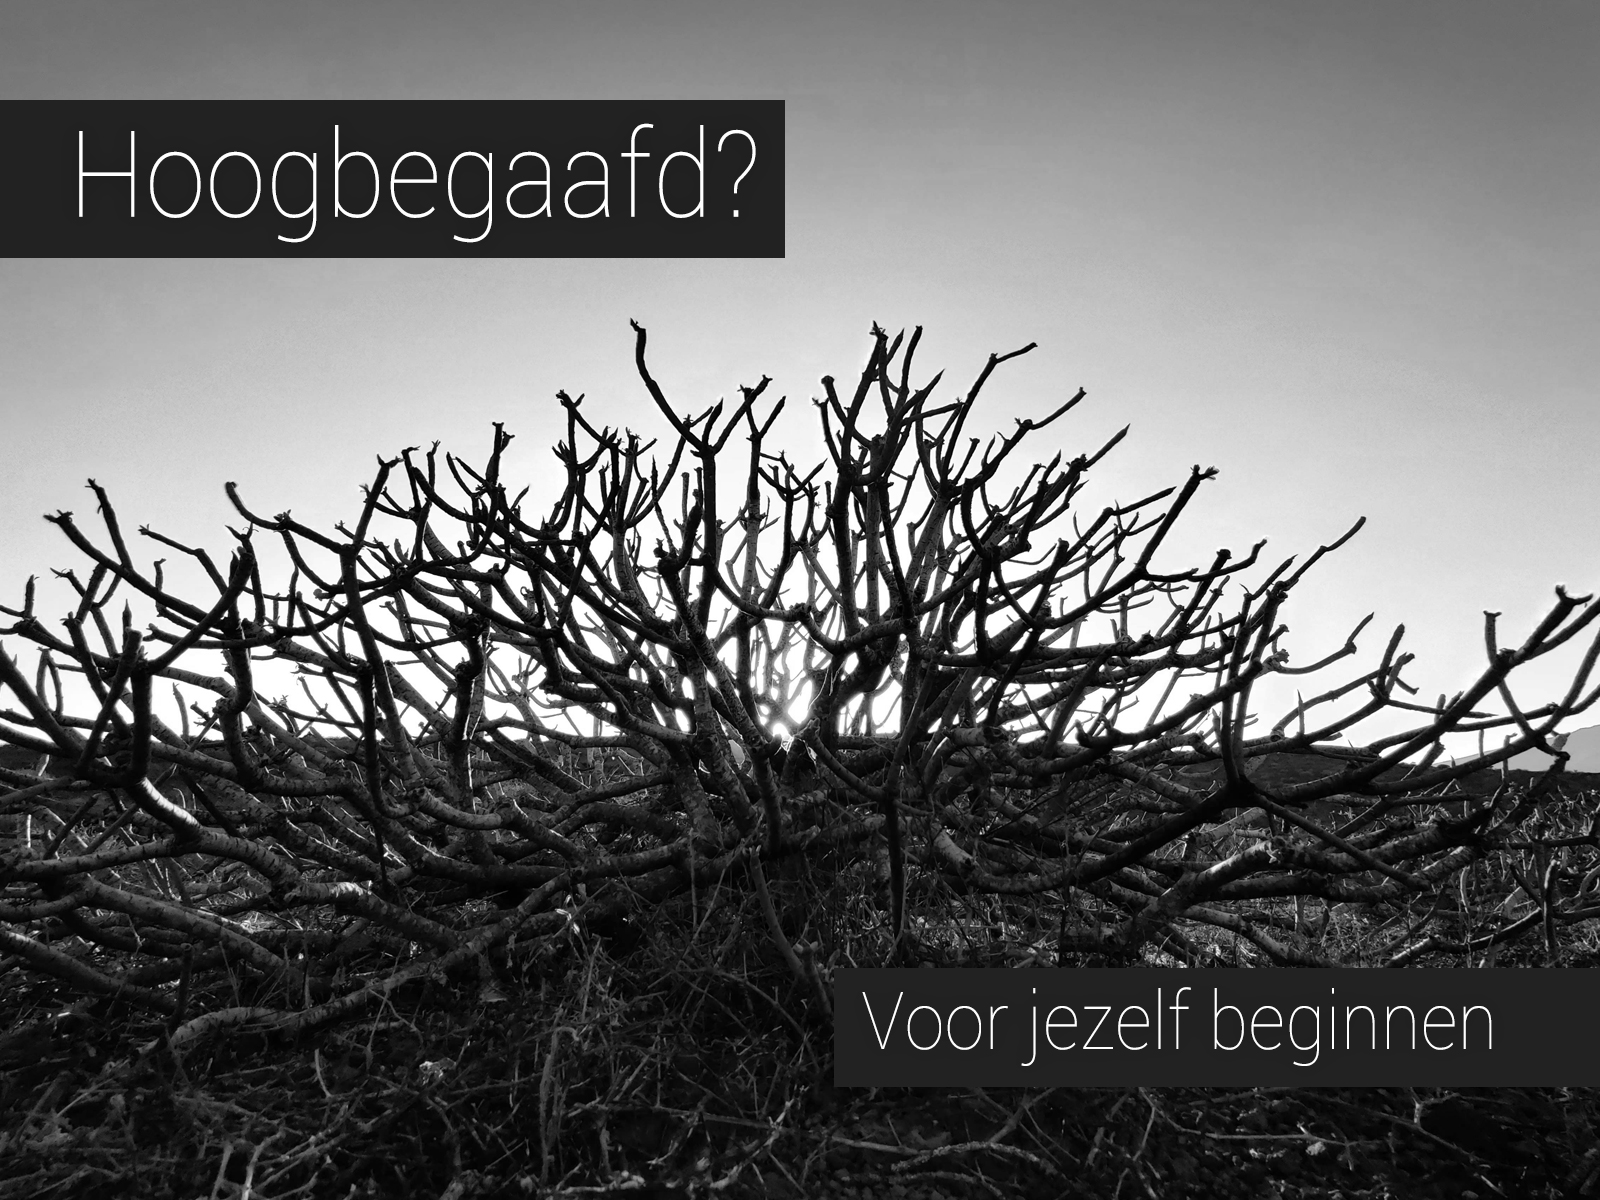 Zwart-wit foto van een kale struik in een desolaat landschap met de tekst: Hoogbegaafd? Voor jezelf beginnen.